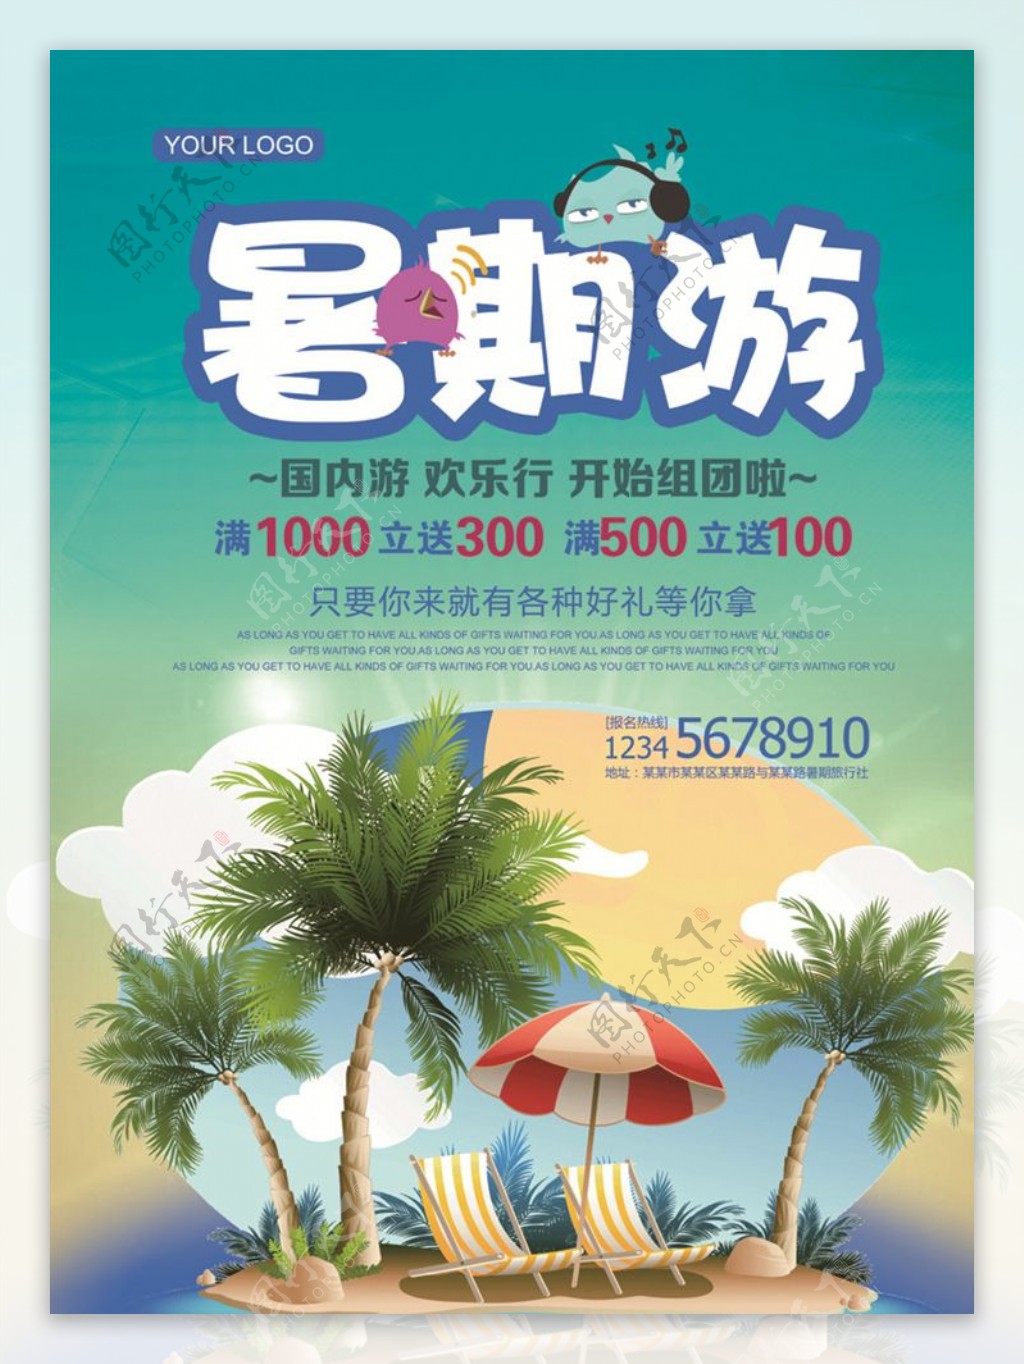 暑期游活动促销宣传海报